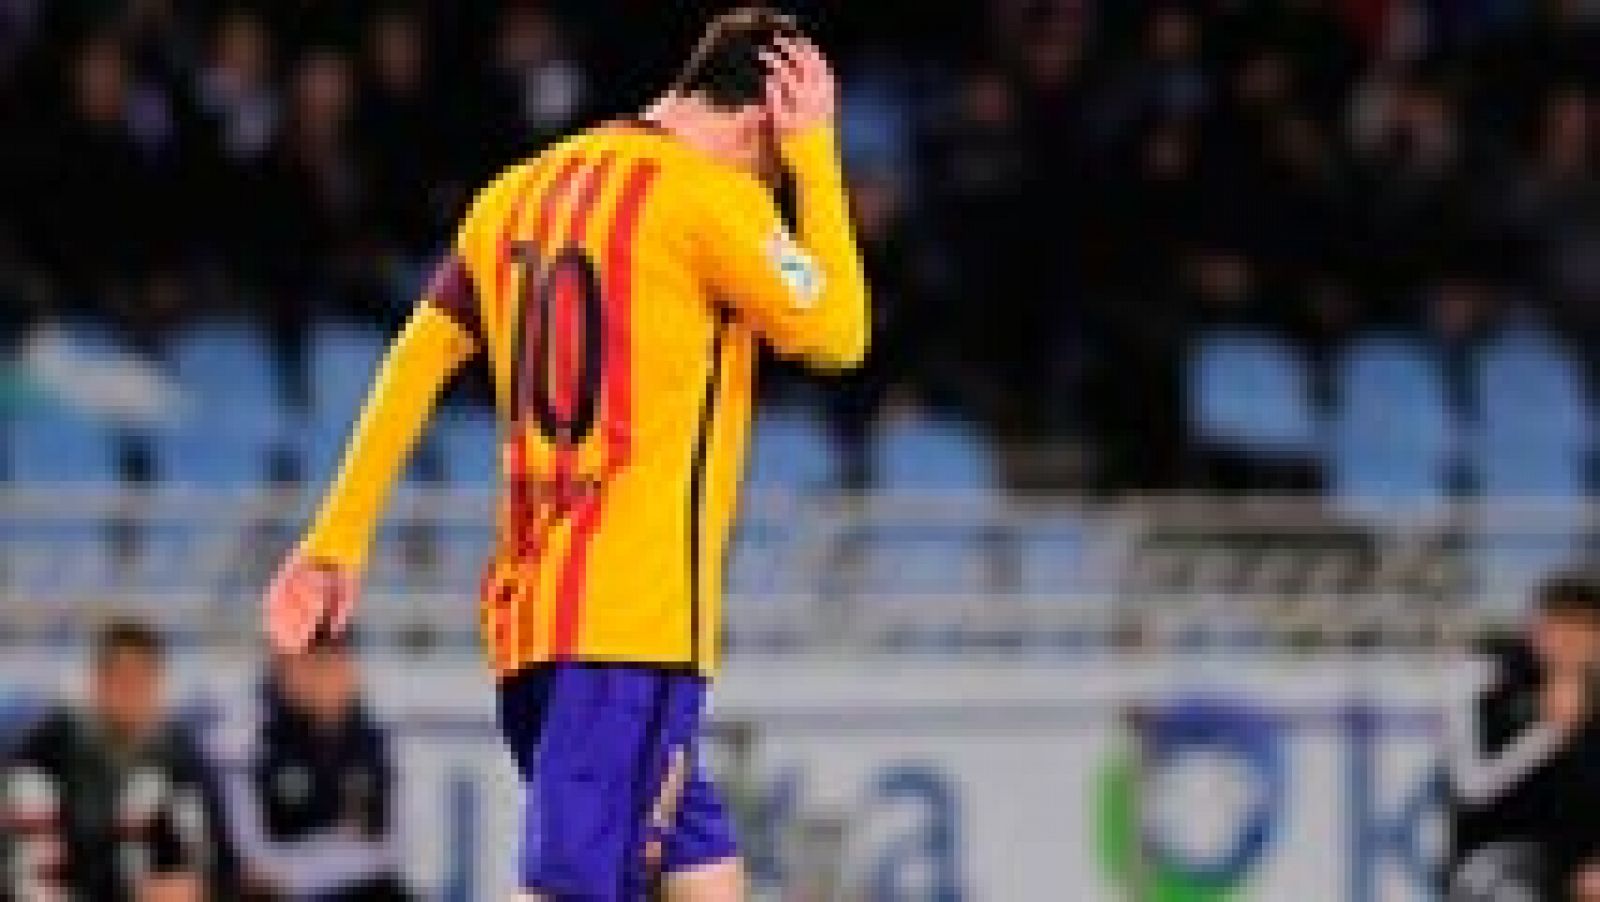 El entrenador del Barcelona, Luis Enrique Martínez, admitió tras la derrota de su equipo en Anoeta que la lucha por el campeonato liguero sigue "abierta" y que "ganará el mejor".